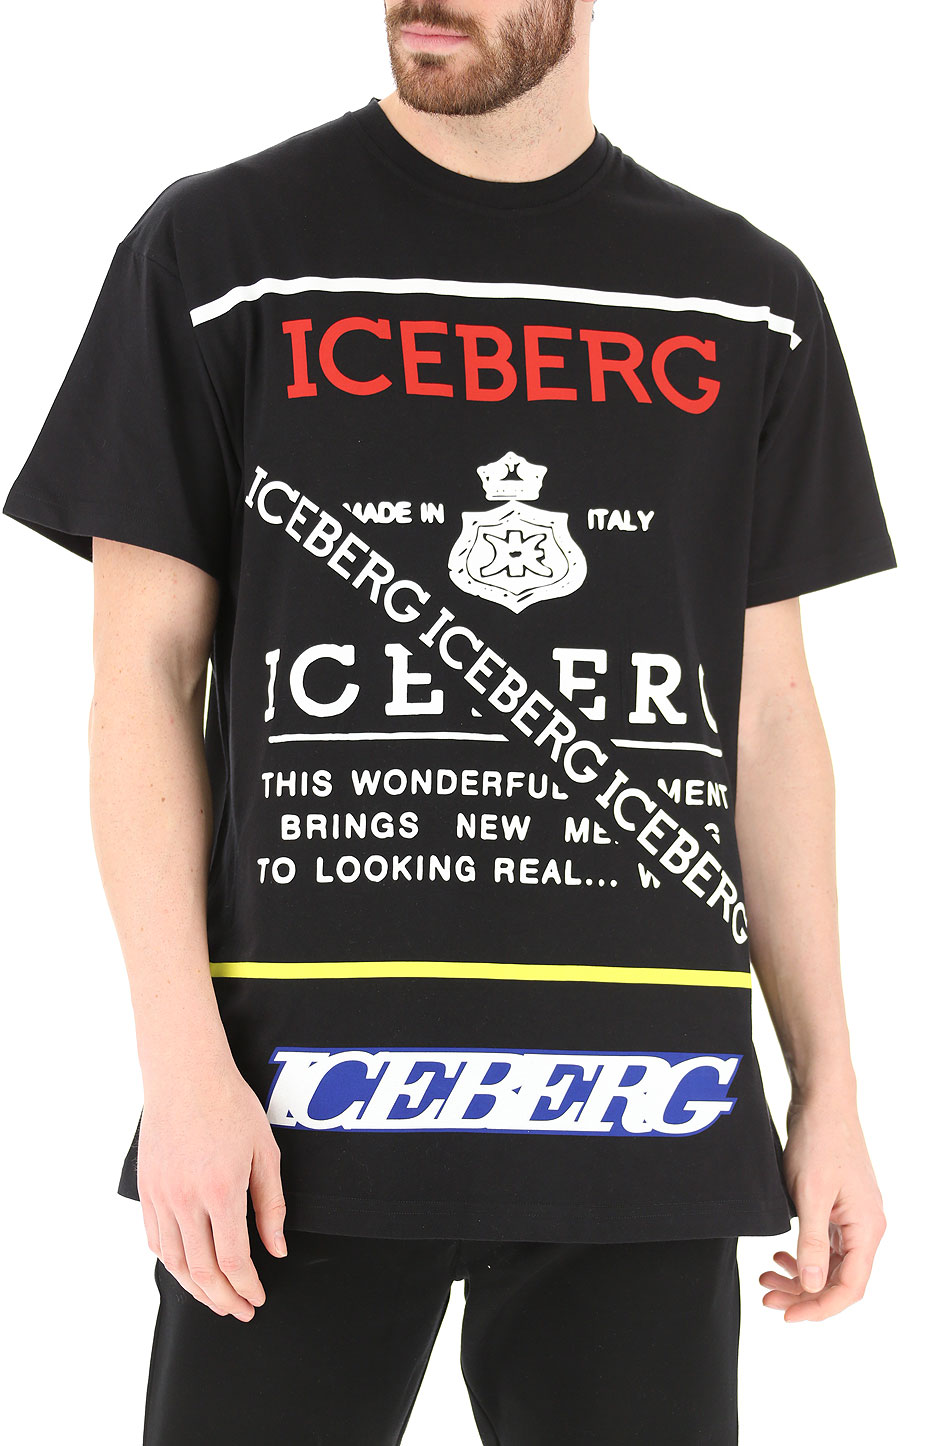 iceberg clothing